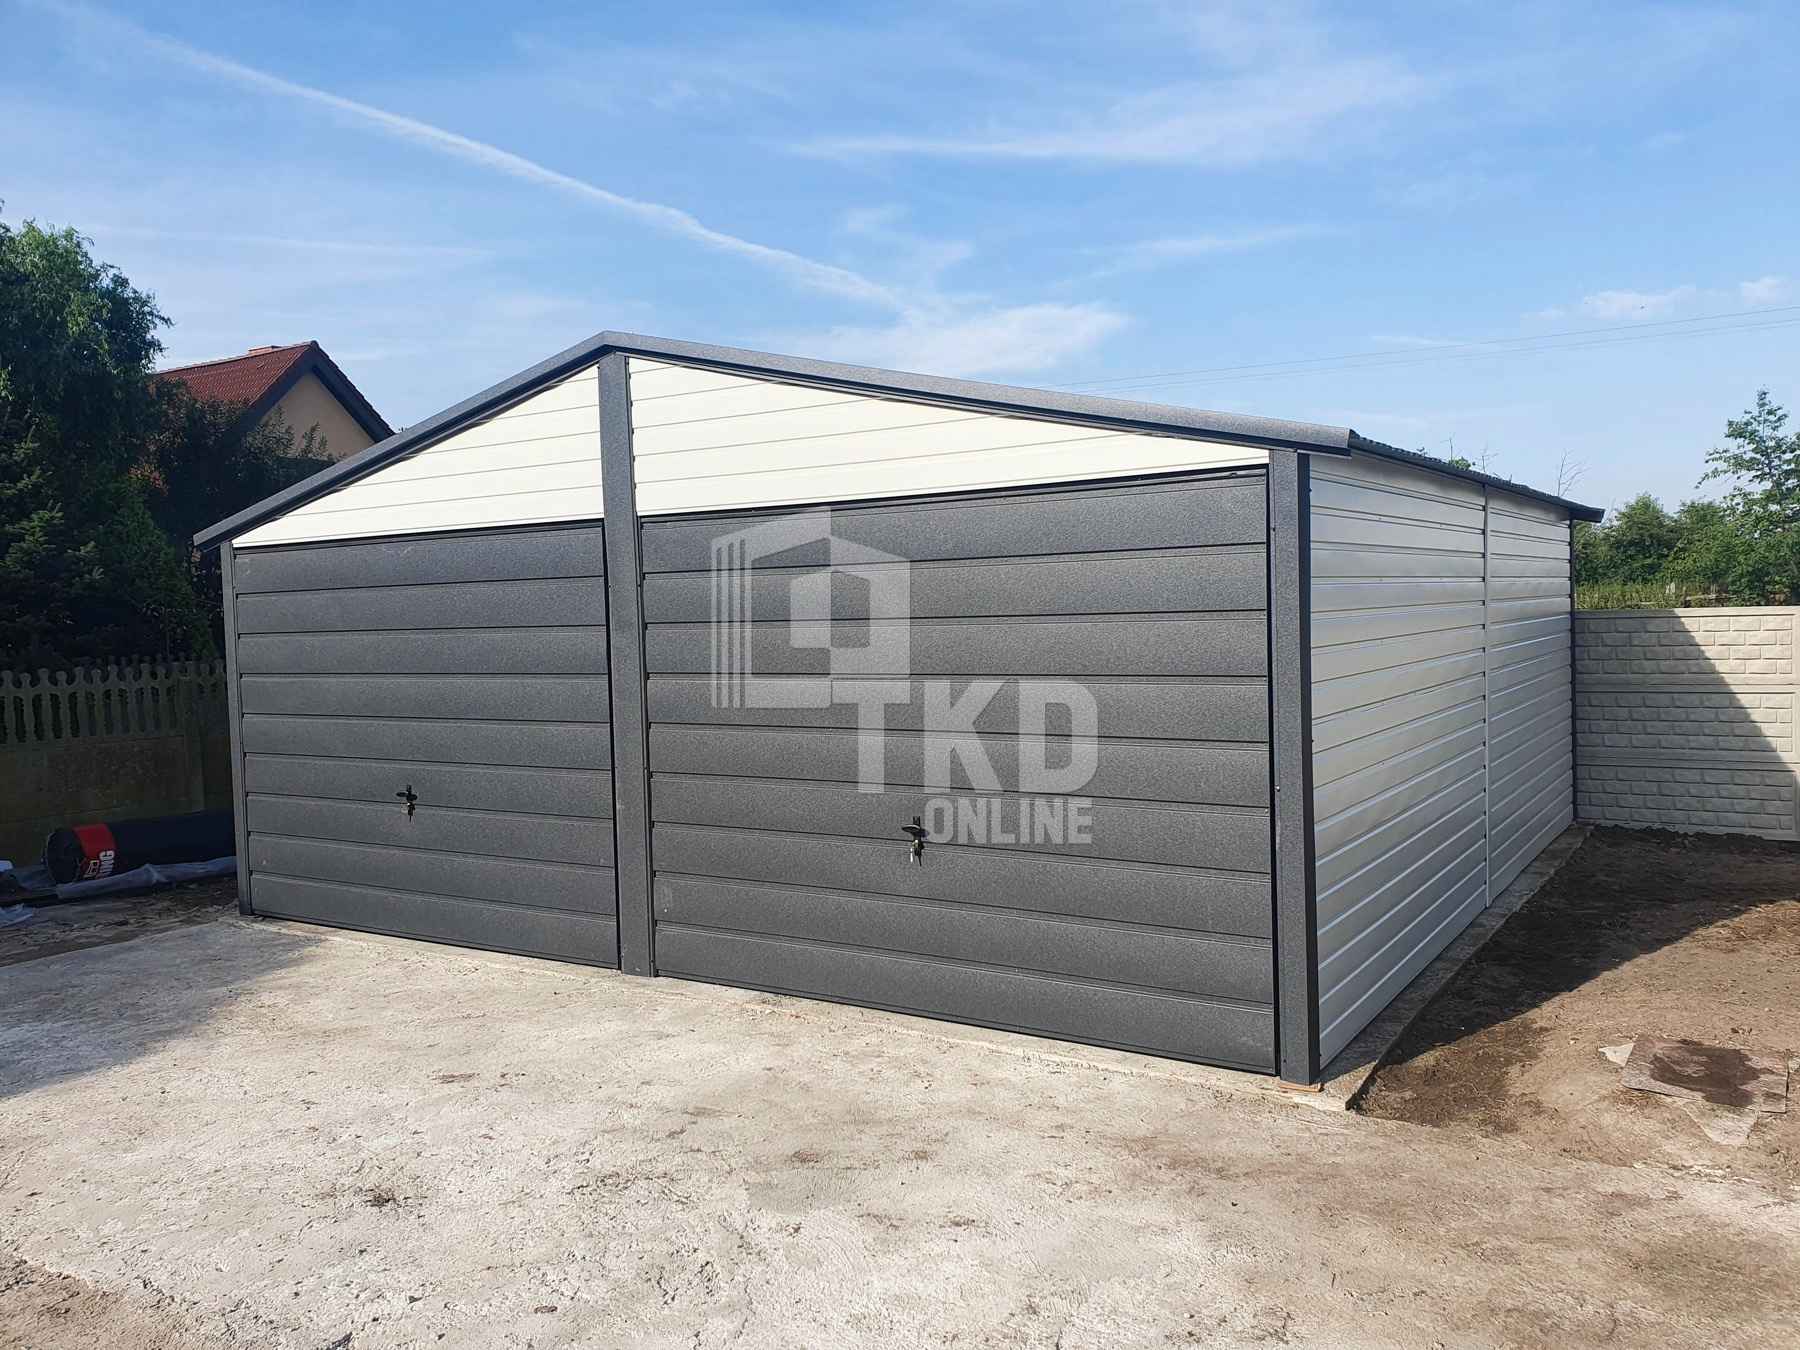 Garaż Blaszany 6x6 - 2x Brama Antracyt + Biały dach dwuspadowy TKD98 Olsztyn - zdjęcie 2